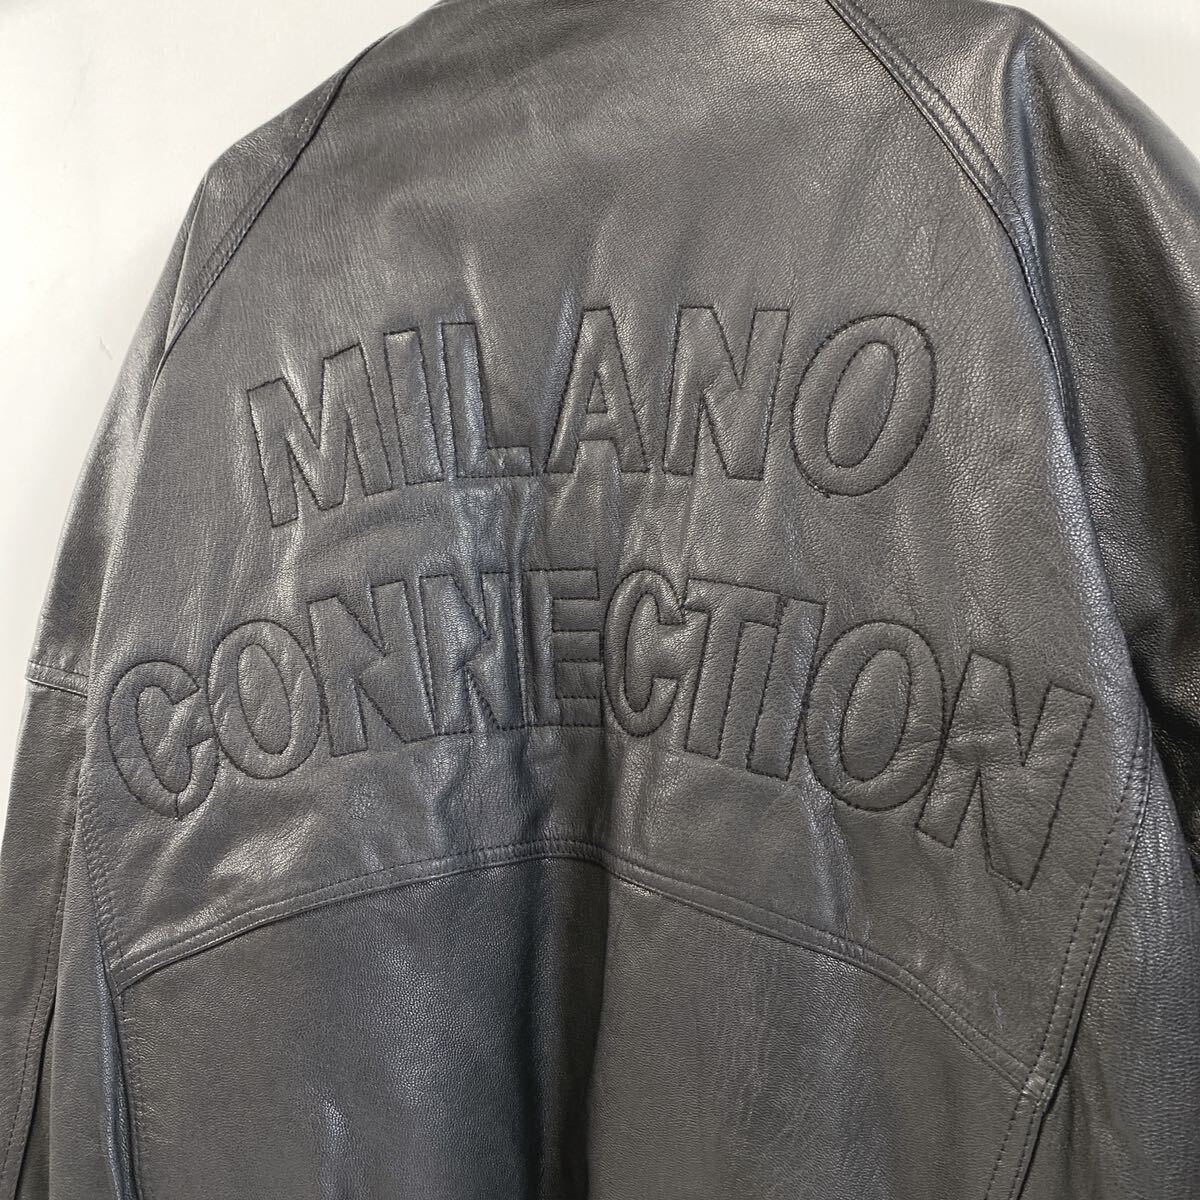 MILANO CONNECTION ミラノコネクション taka-Q フランス産 羊革使用 オールレザースタジャン レザージャケット Lサイズ 黒/ブラックの画像2